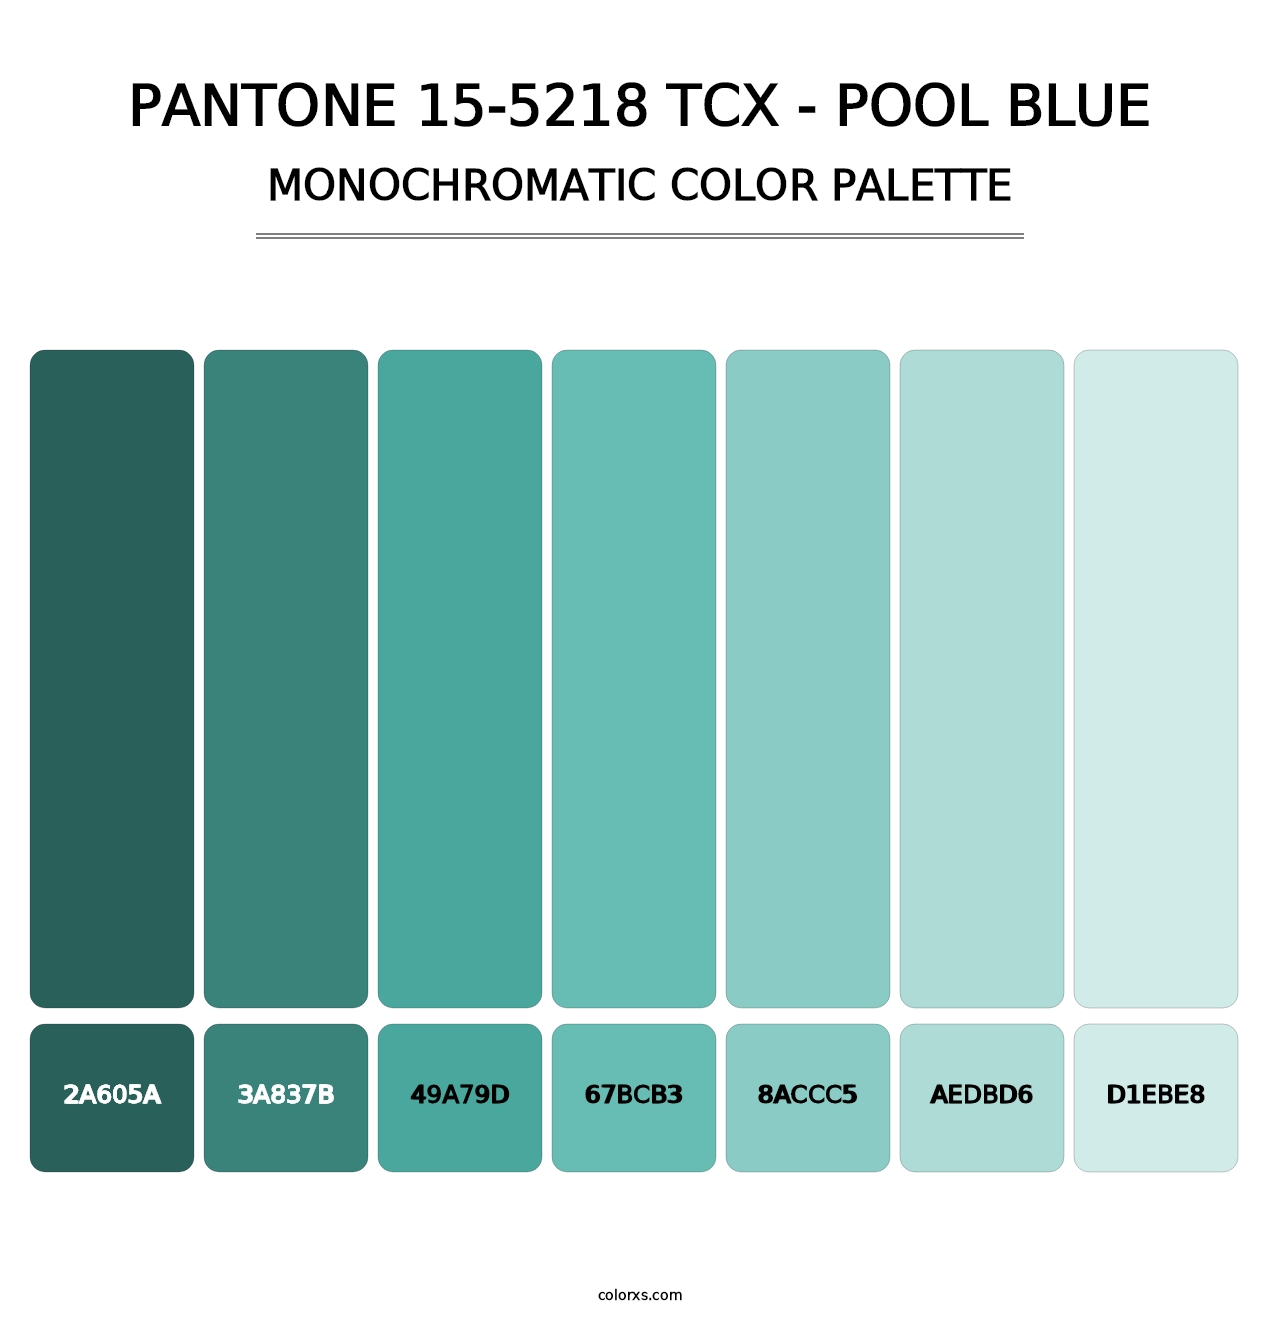 PANTONE 15-5218 TCX - Pool Blue - Monochromatic Color Palette